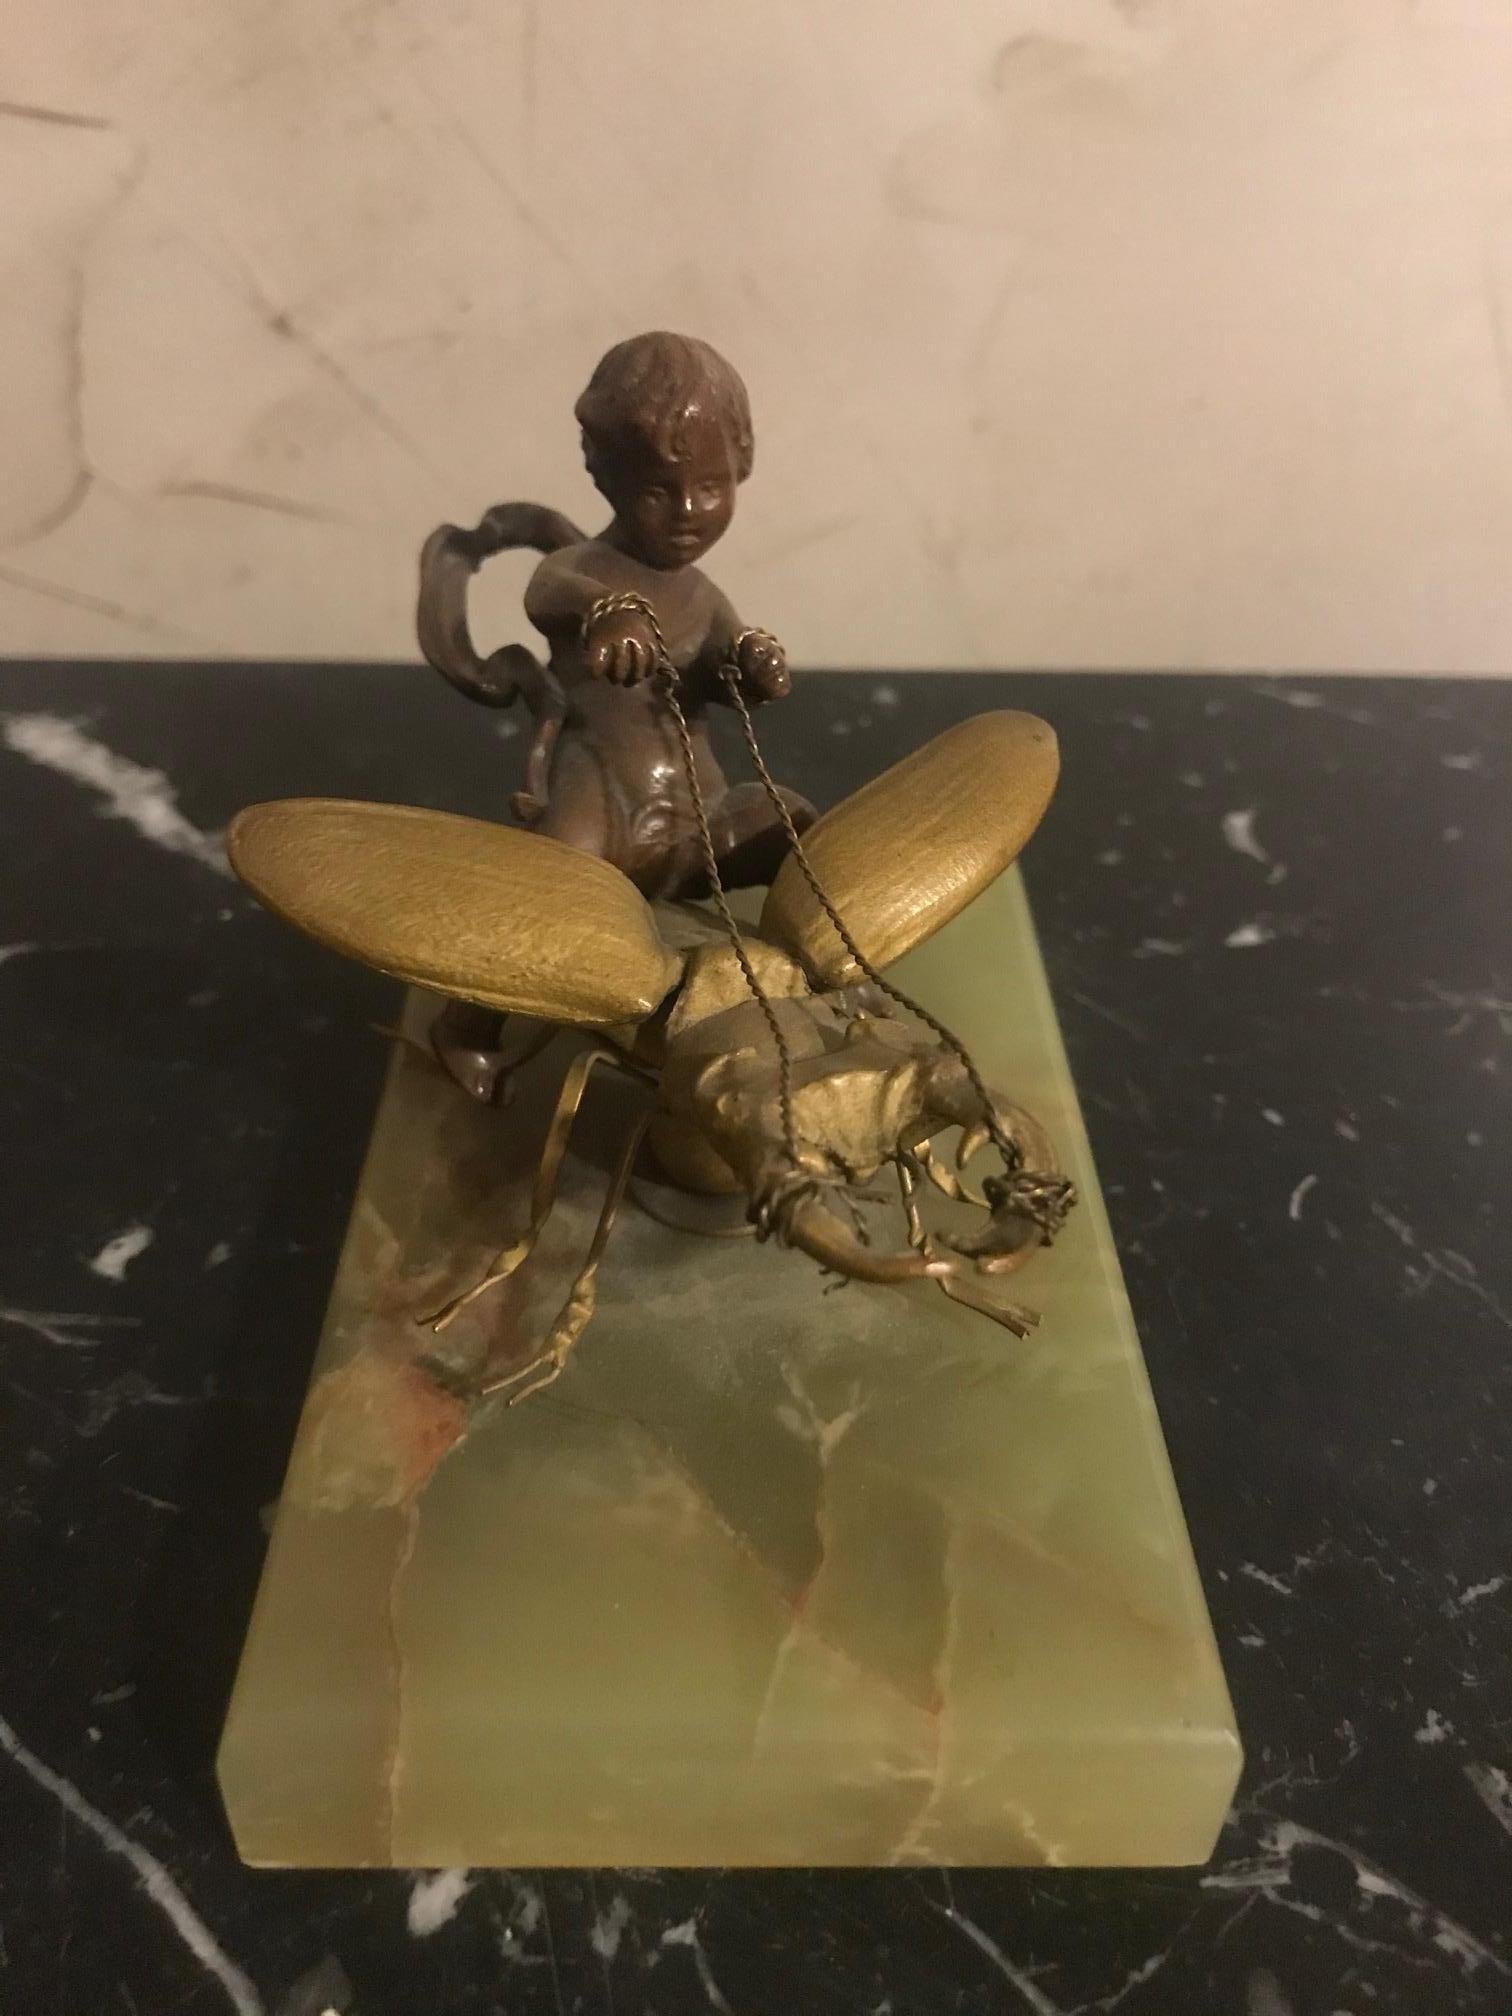 Très belle et rare statue en bronze du XIXe siècle représentant un enfant chevauchant un scarabée dans le style d'Eutrope Bouret (1833-1906) sur un socle en marbre vert.
Très rare, jamais vu ce sujet en bronze. Deux patines de bronze